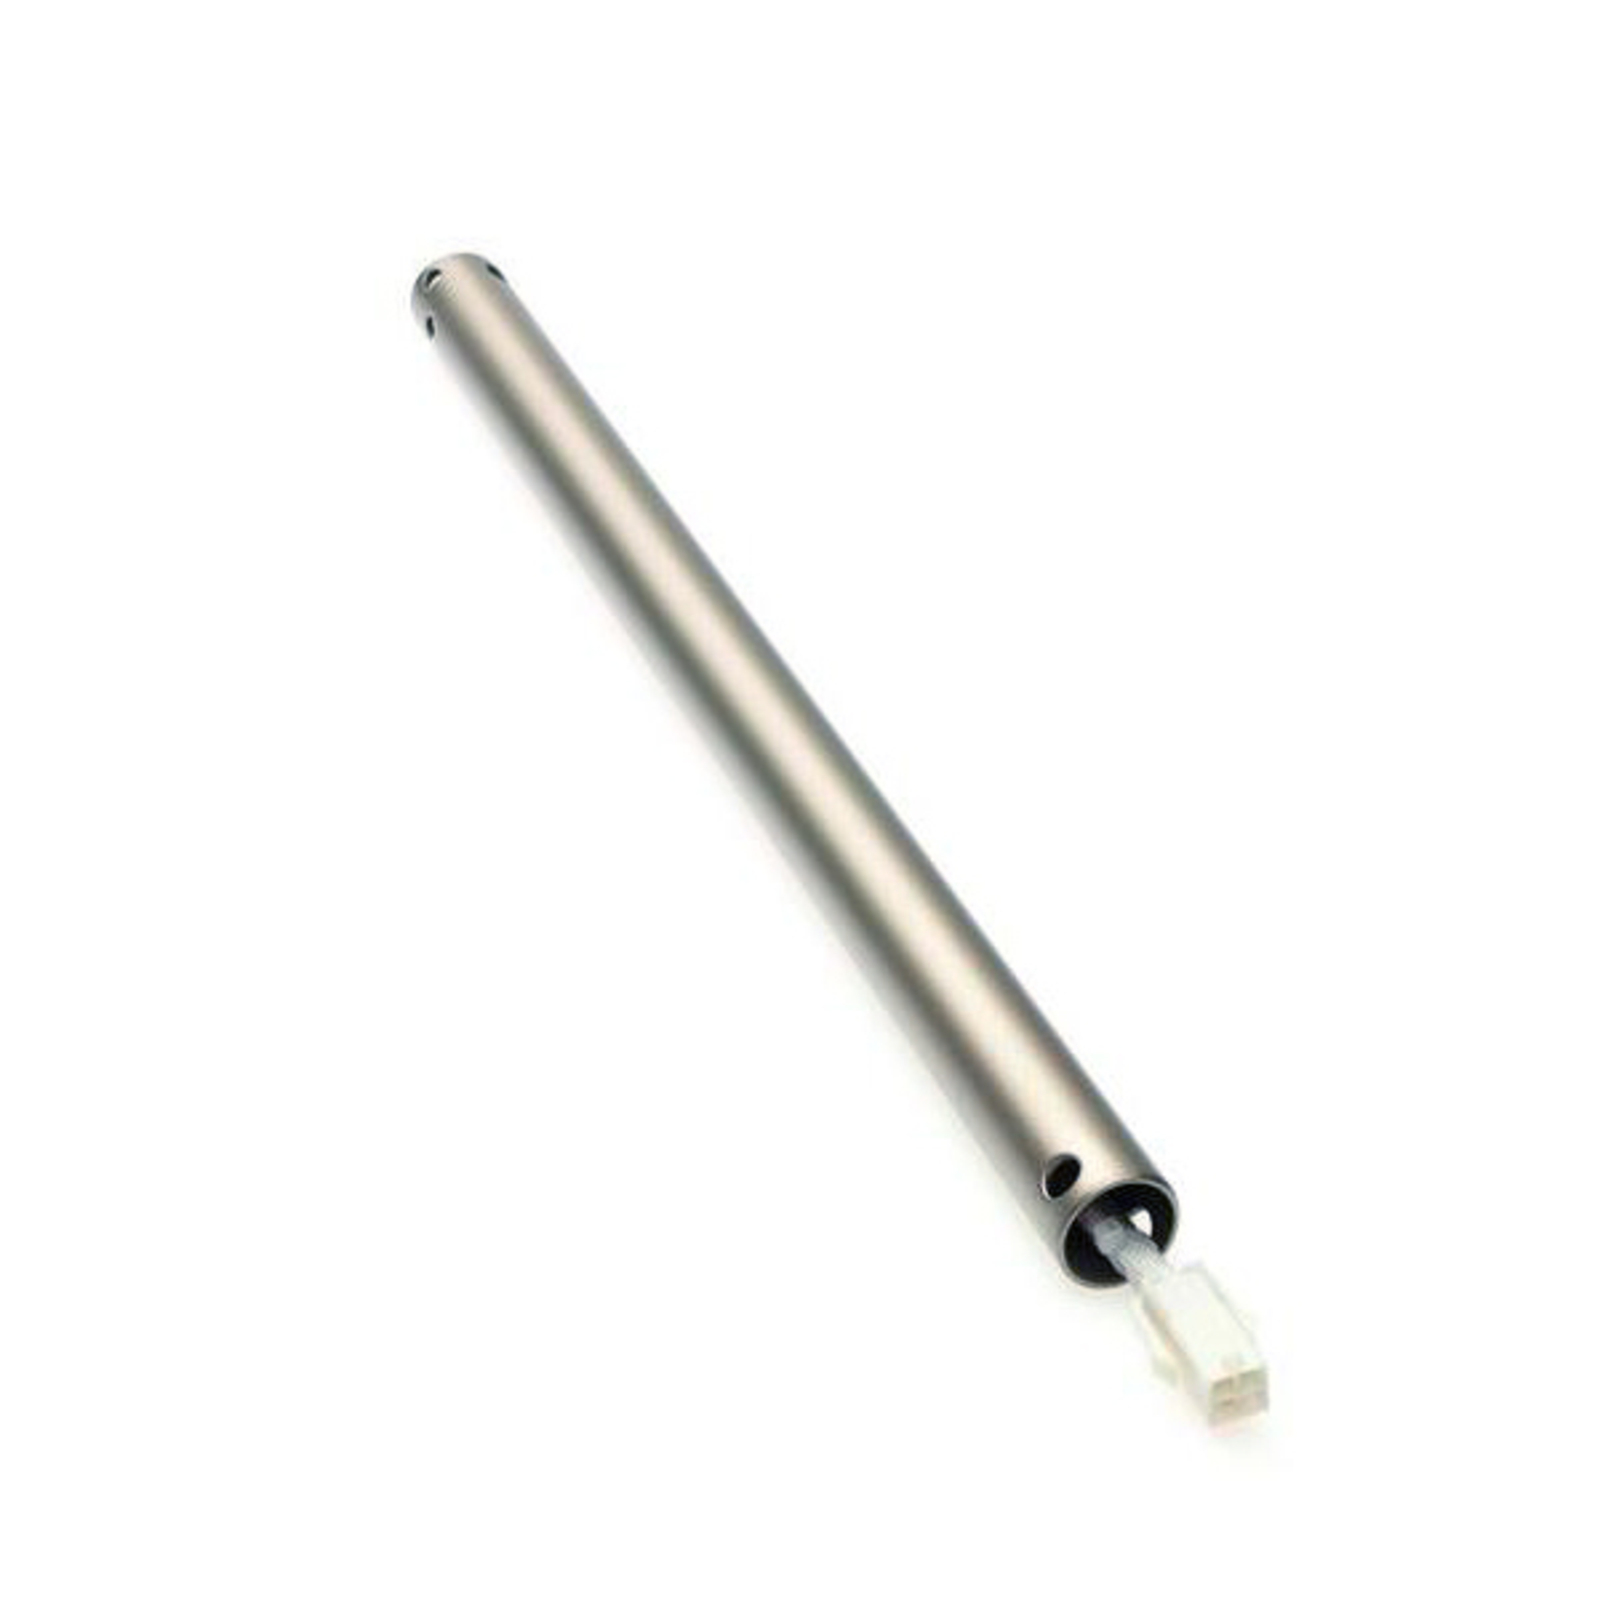 46 cm extension rod in titanium